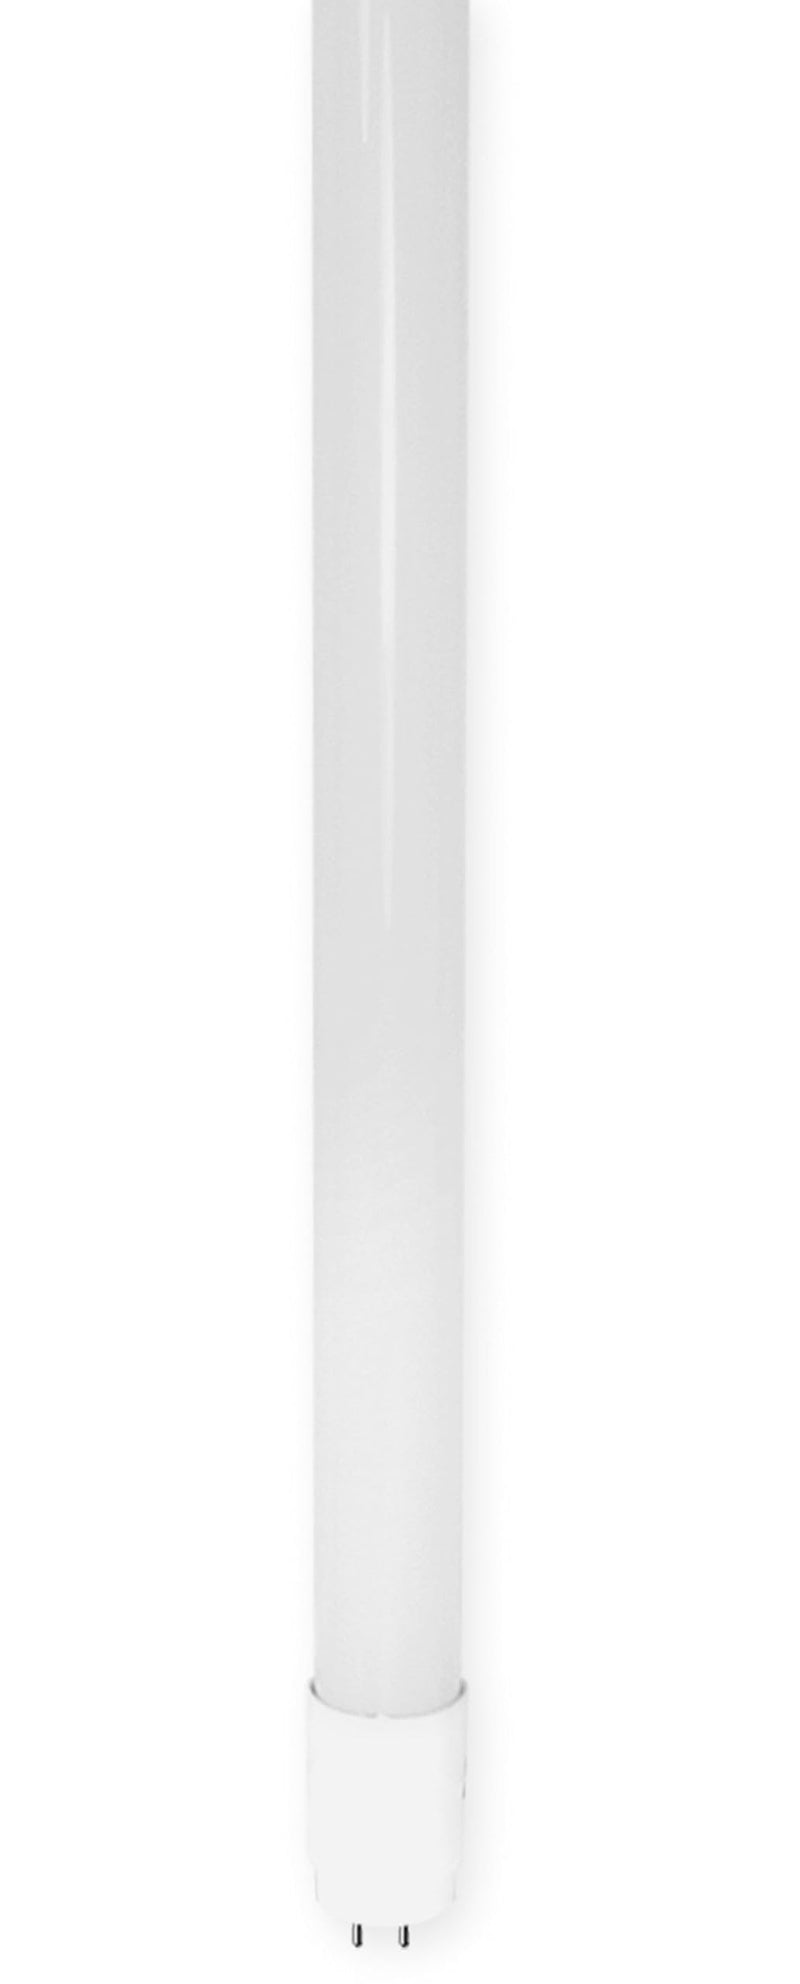  [AUSTRALIA] - LED glass tube 24 watt normal white 150cm KVG / VVG with starter